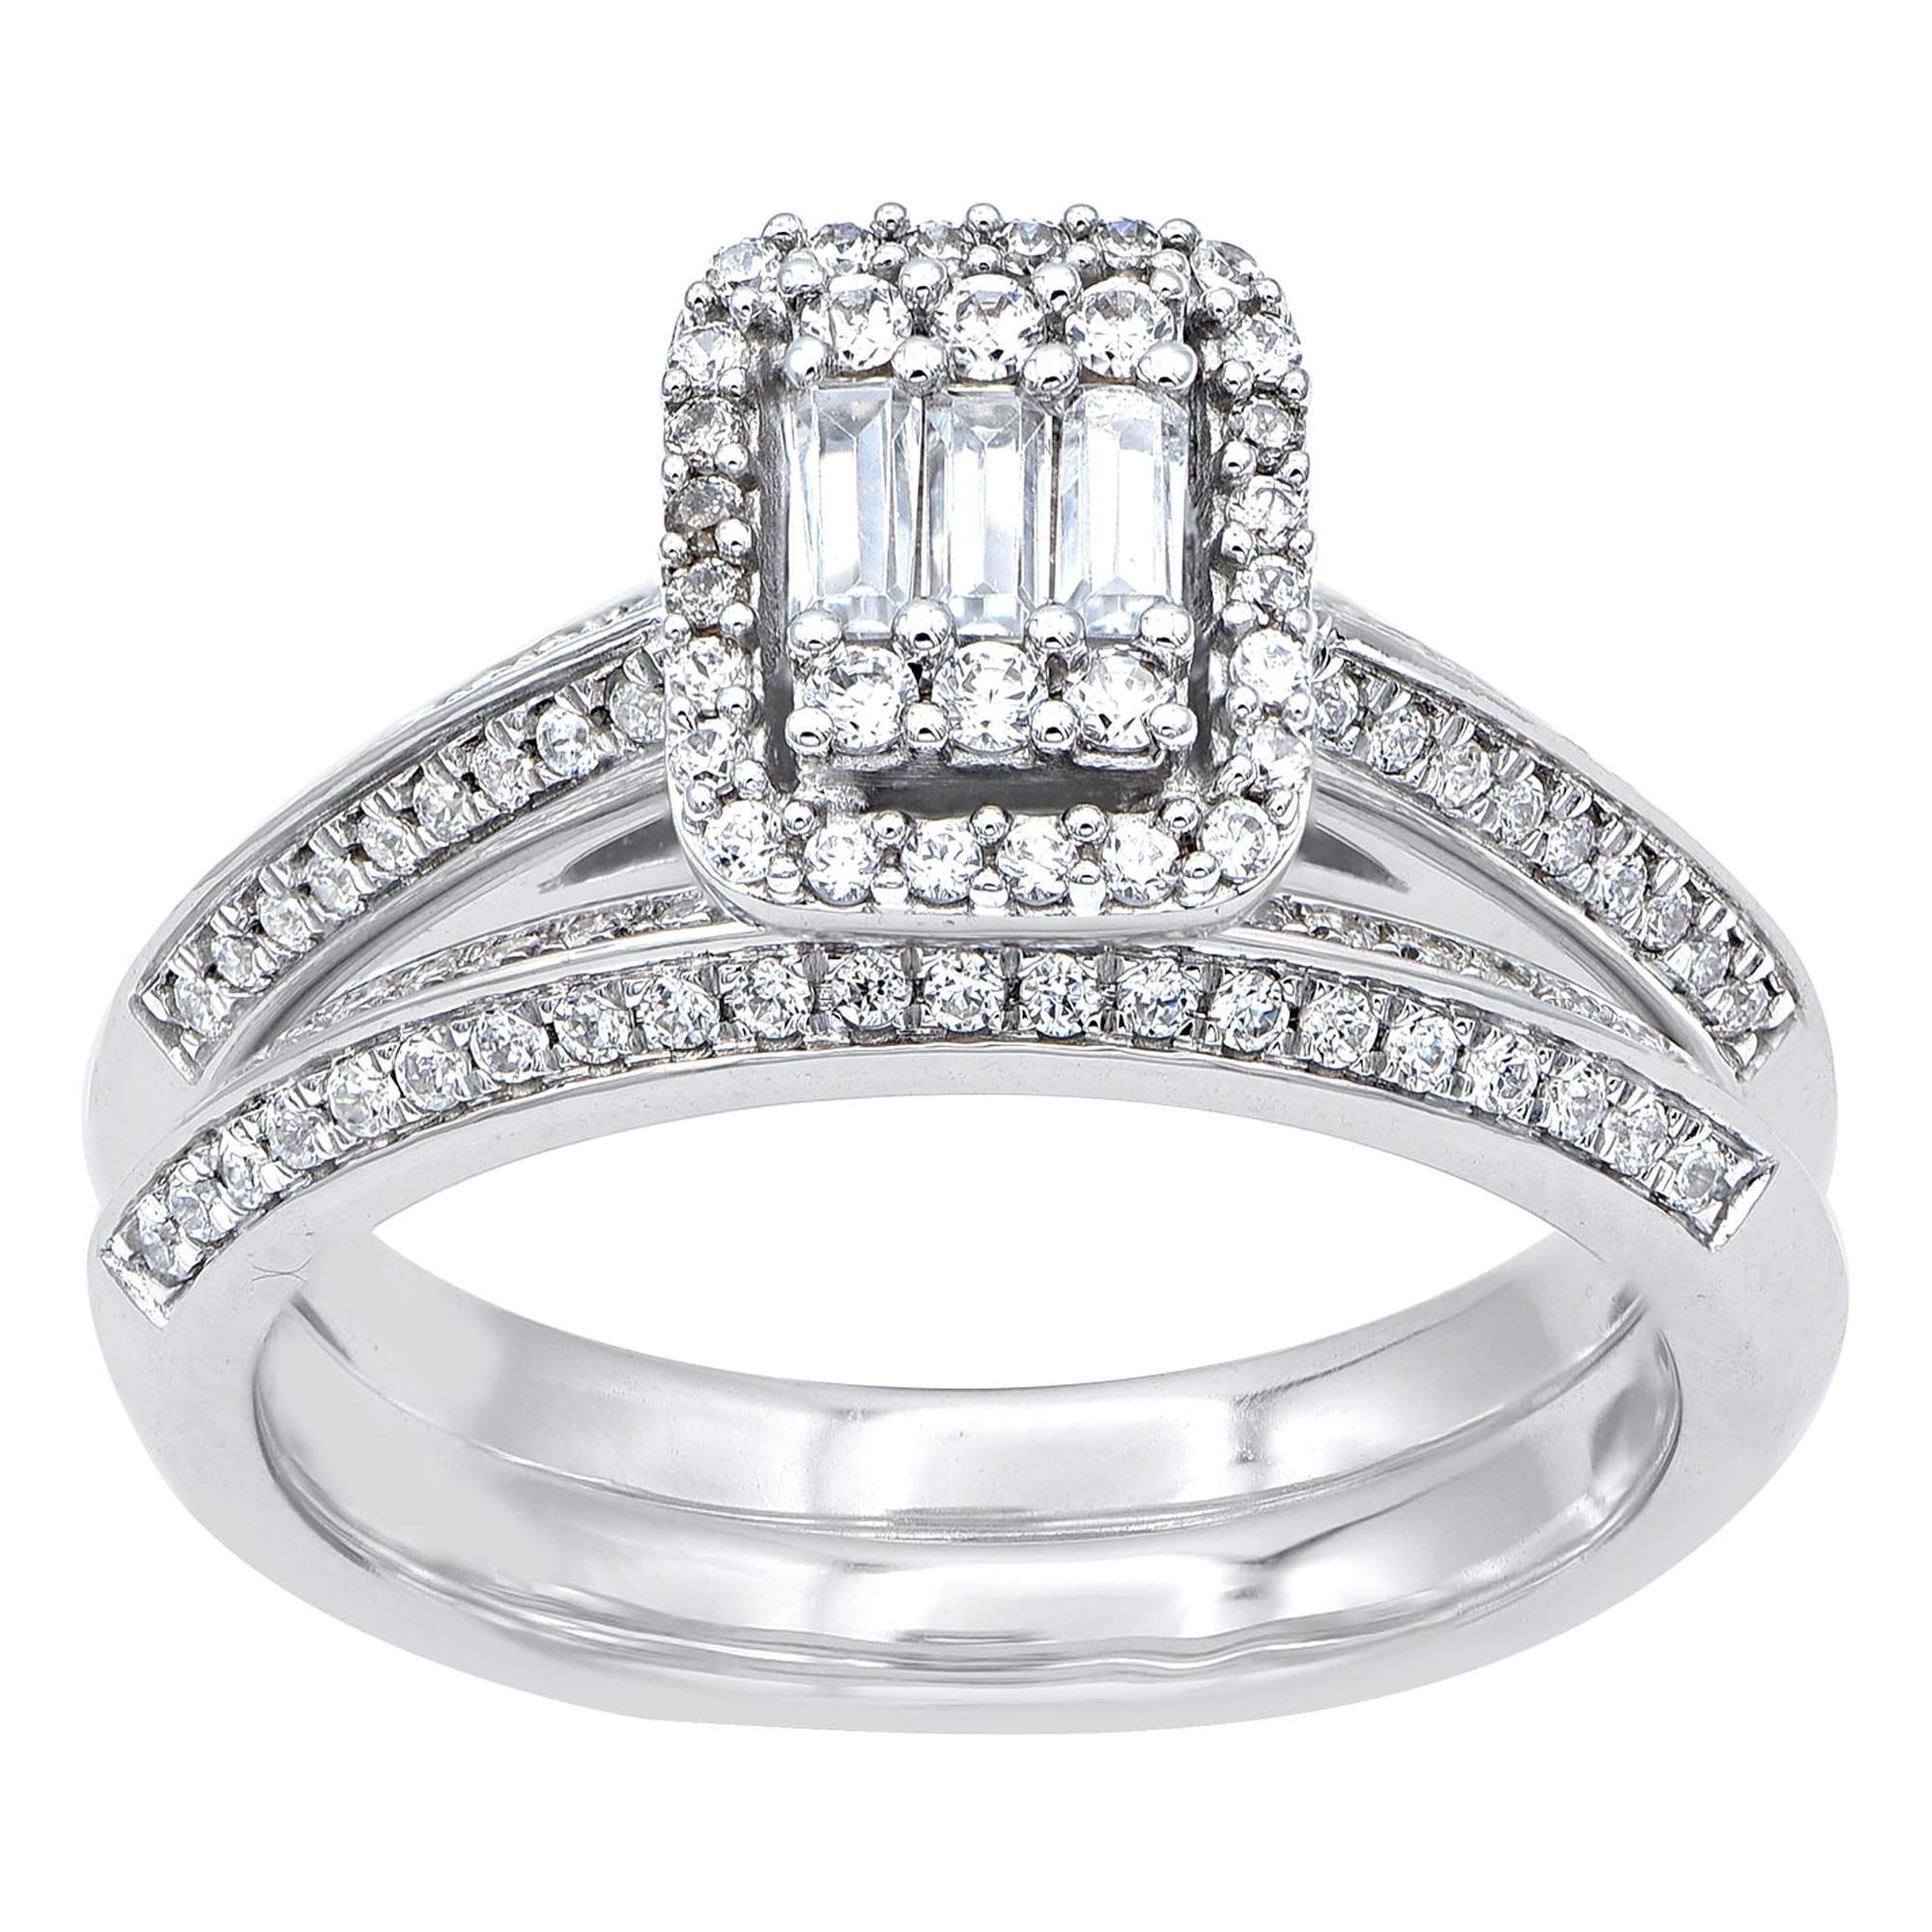 TJD 0.75 Carat Round and Baguette Diamond 14 Karat White Gold Bridal Ring Set